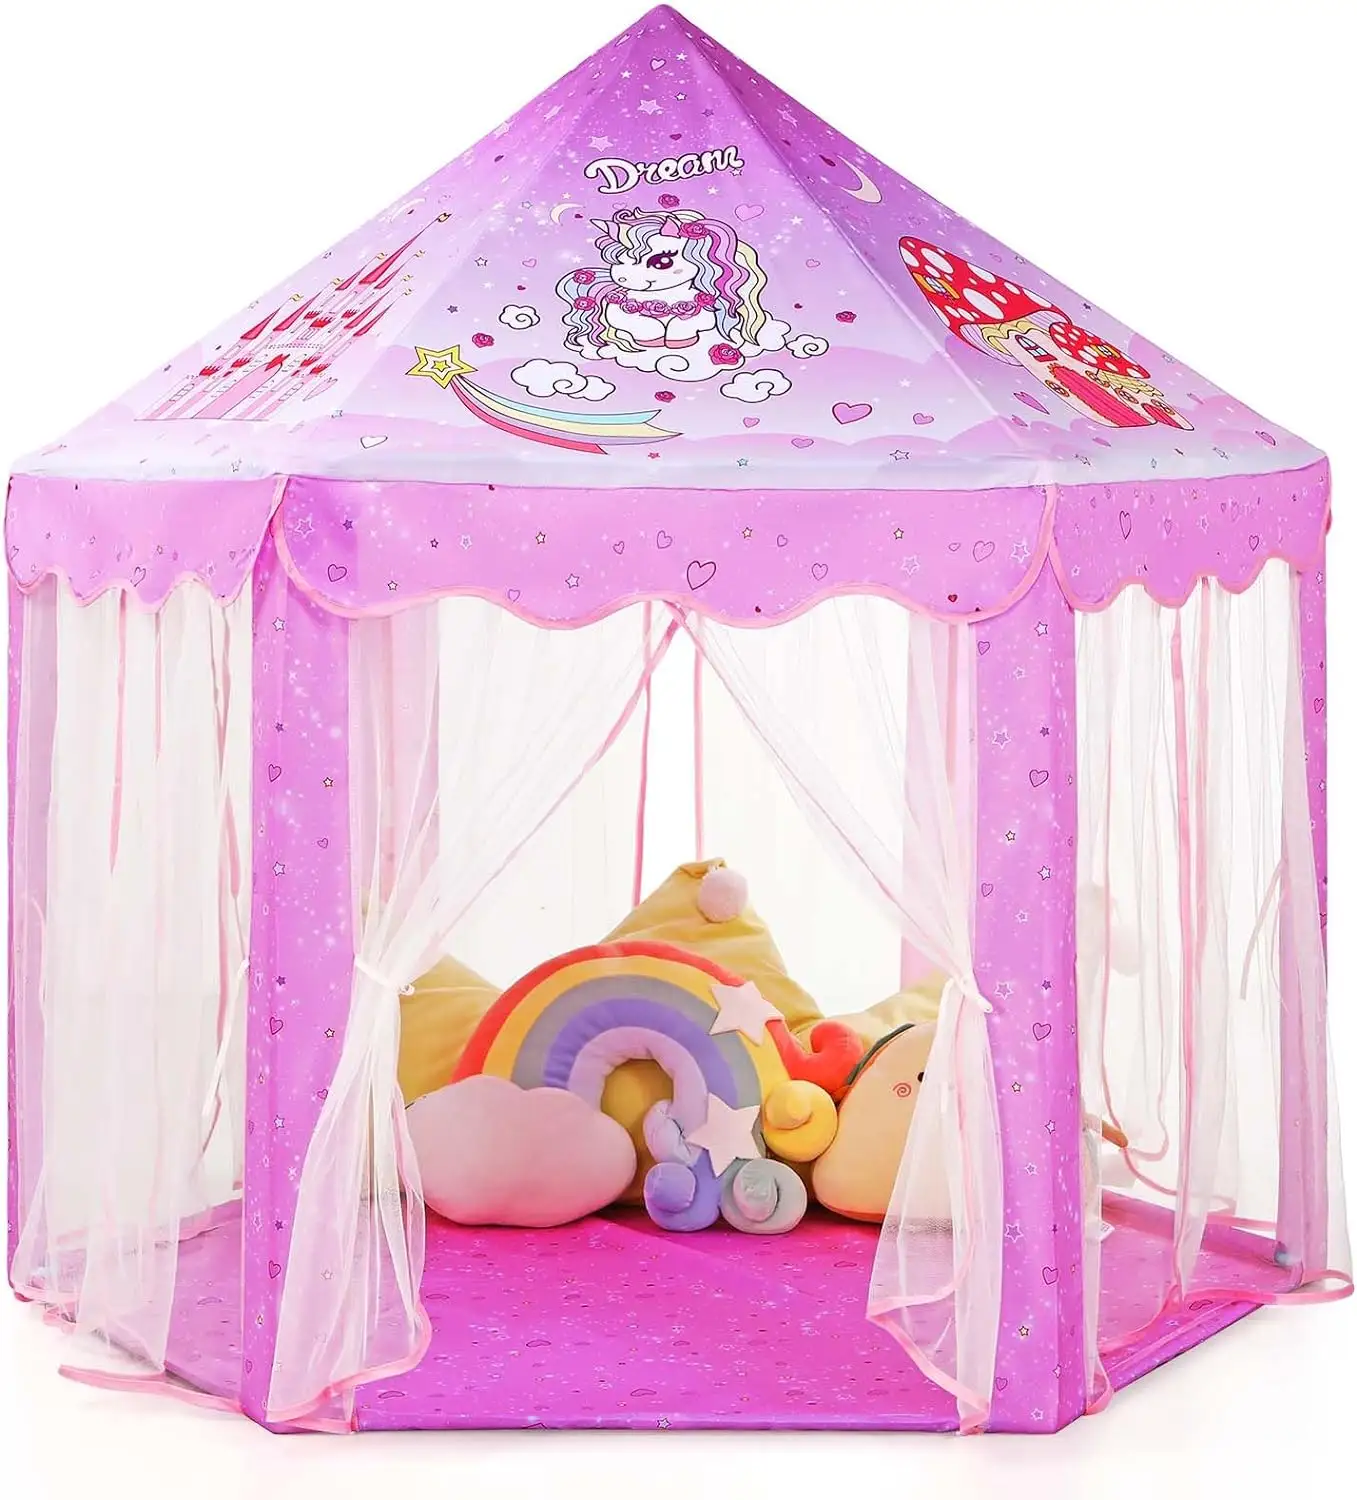 אוהל נסיכות בנות חד קרן בית משחק גדול לילדים טירת משחק אוהל עם אורות כוכבים צעצוע מתנה לילדים משחק פנימי וחיצוני